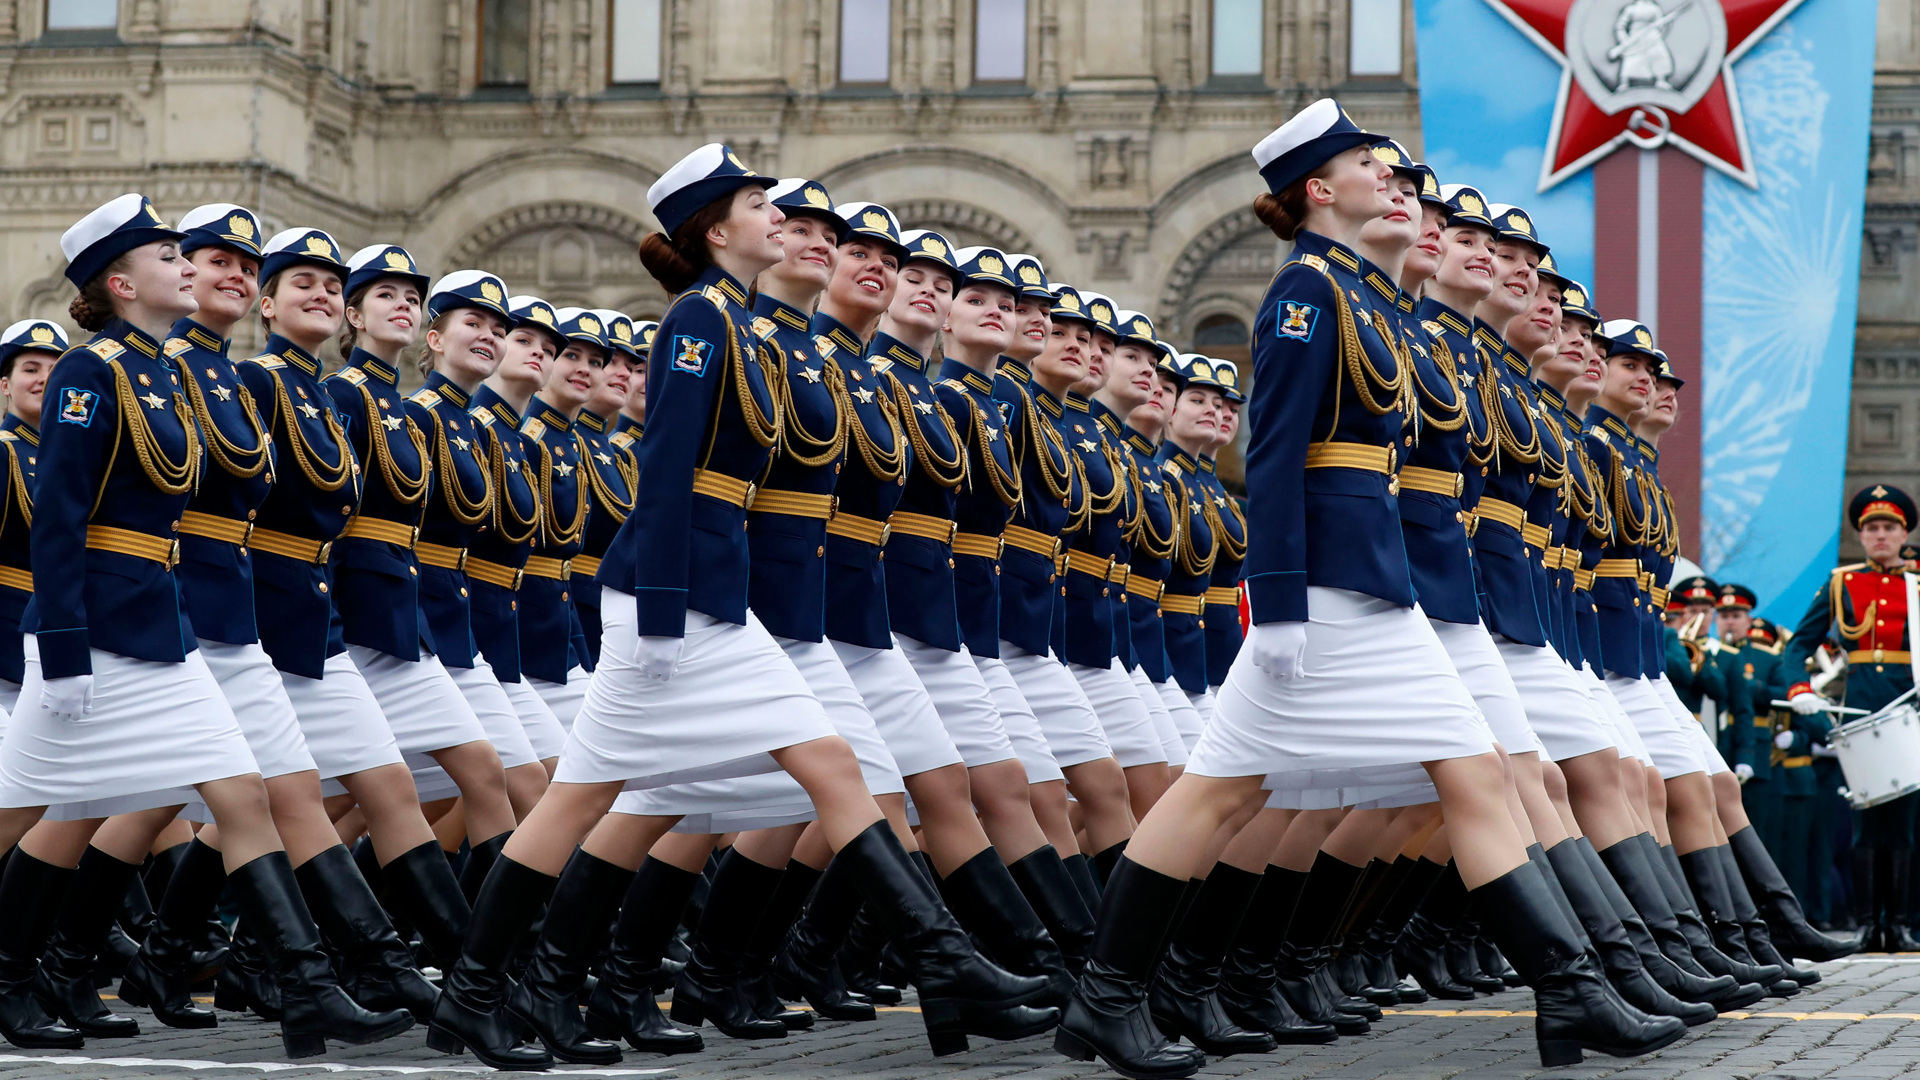 Случае параде. Курсантки на параде в Москве. Девушки на параде. Женский полк на параде.